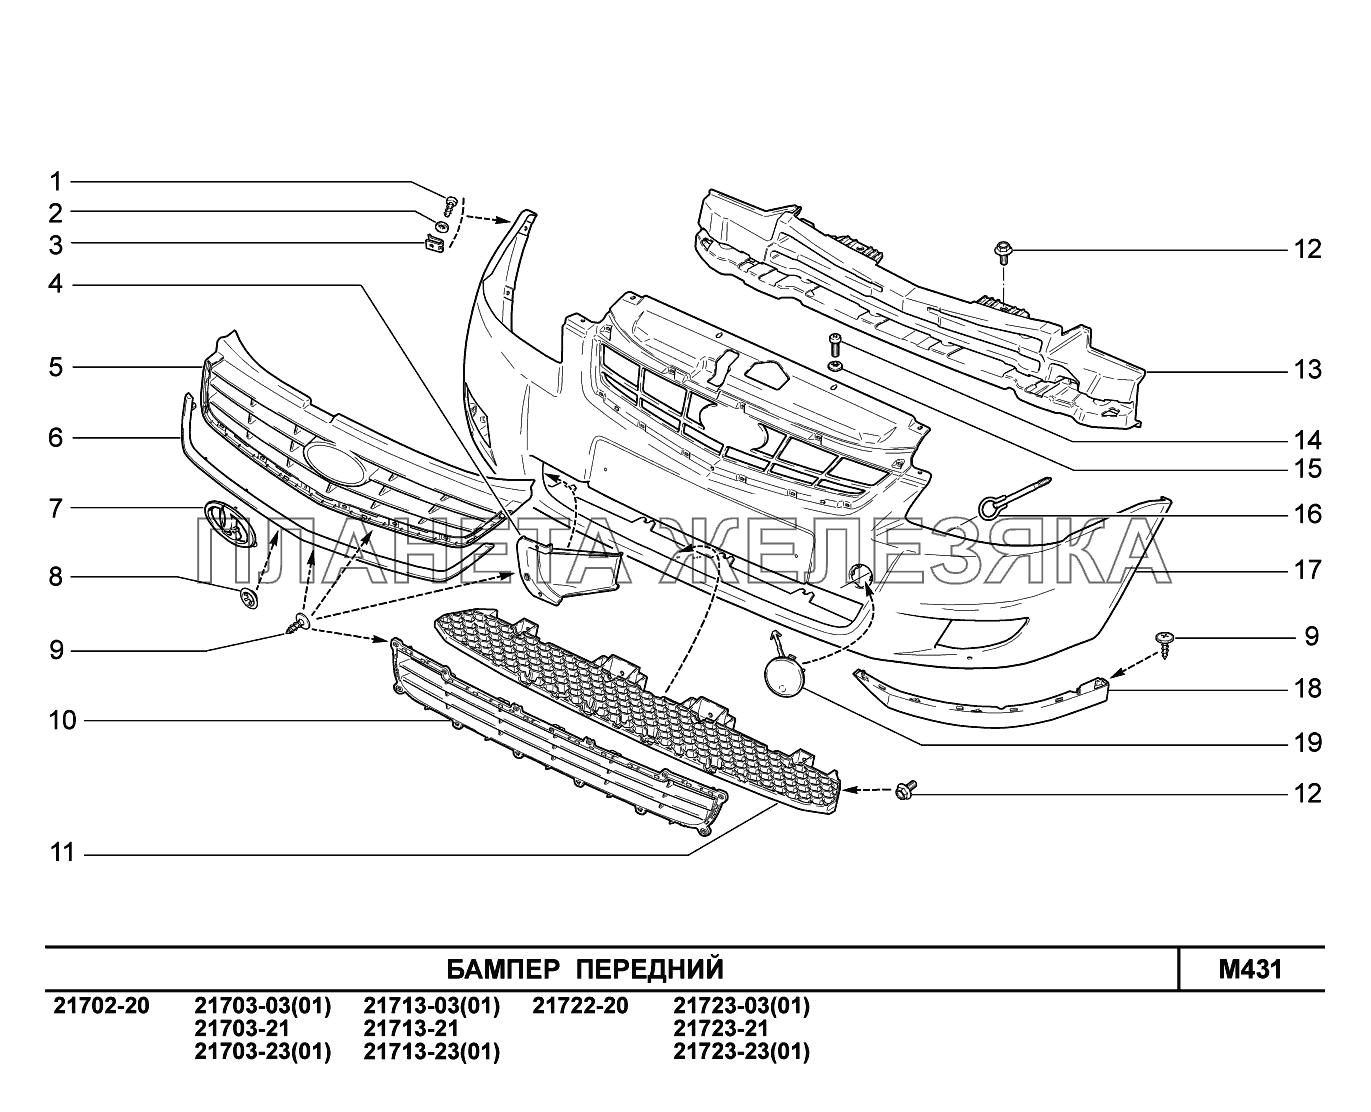 M431. Бампер передний ВАЗ-2170 